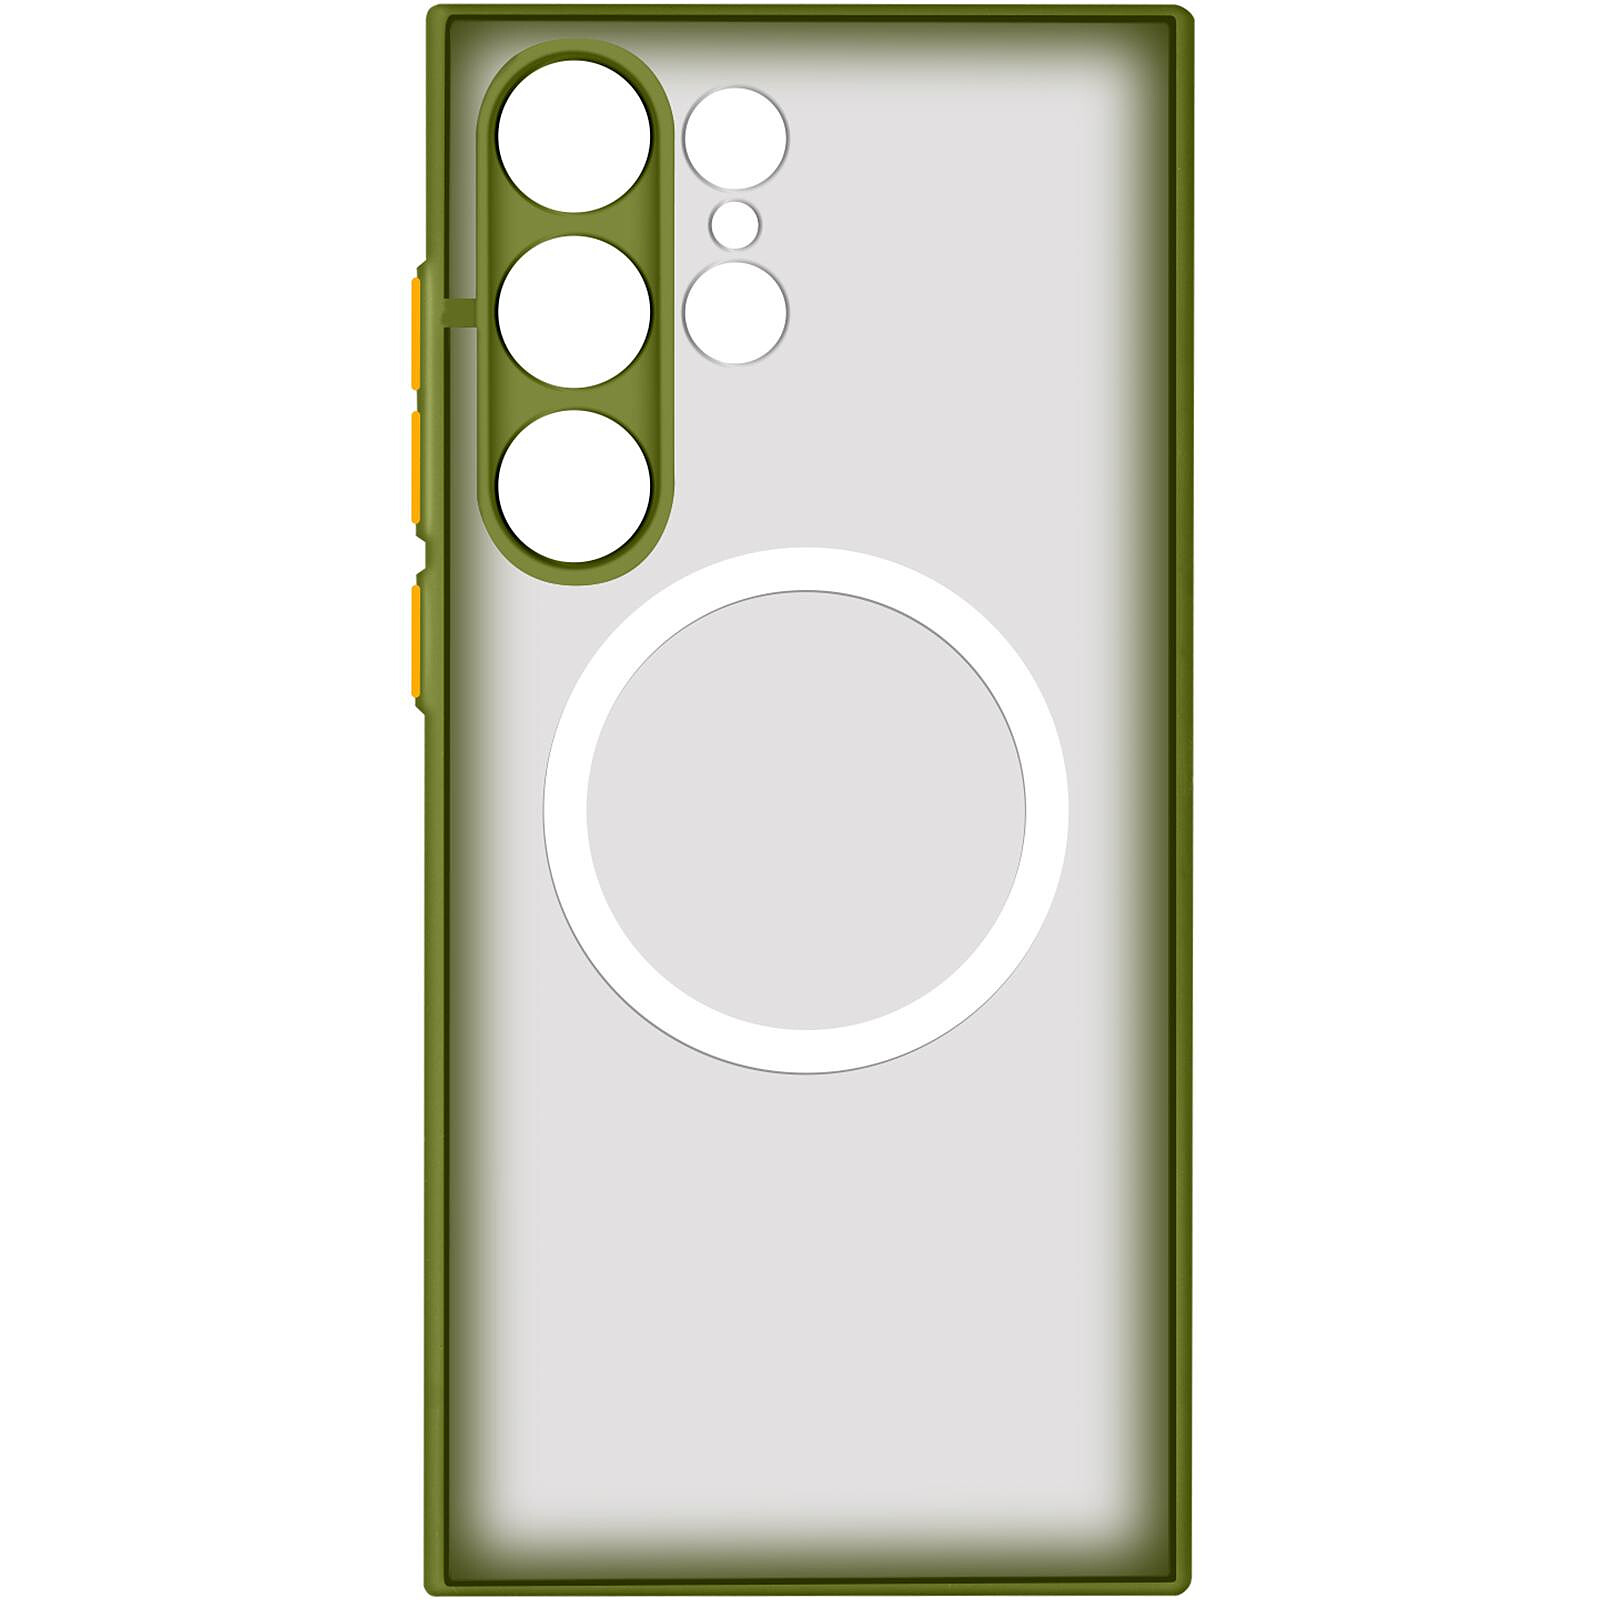 Coque Transparente iPhone 13 Pro Magsafe avec bords colorés (vert) - Coque- telephone.fr